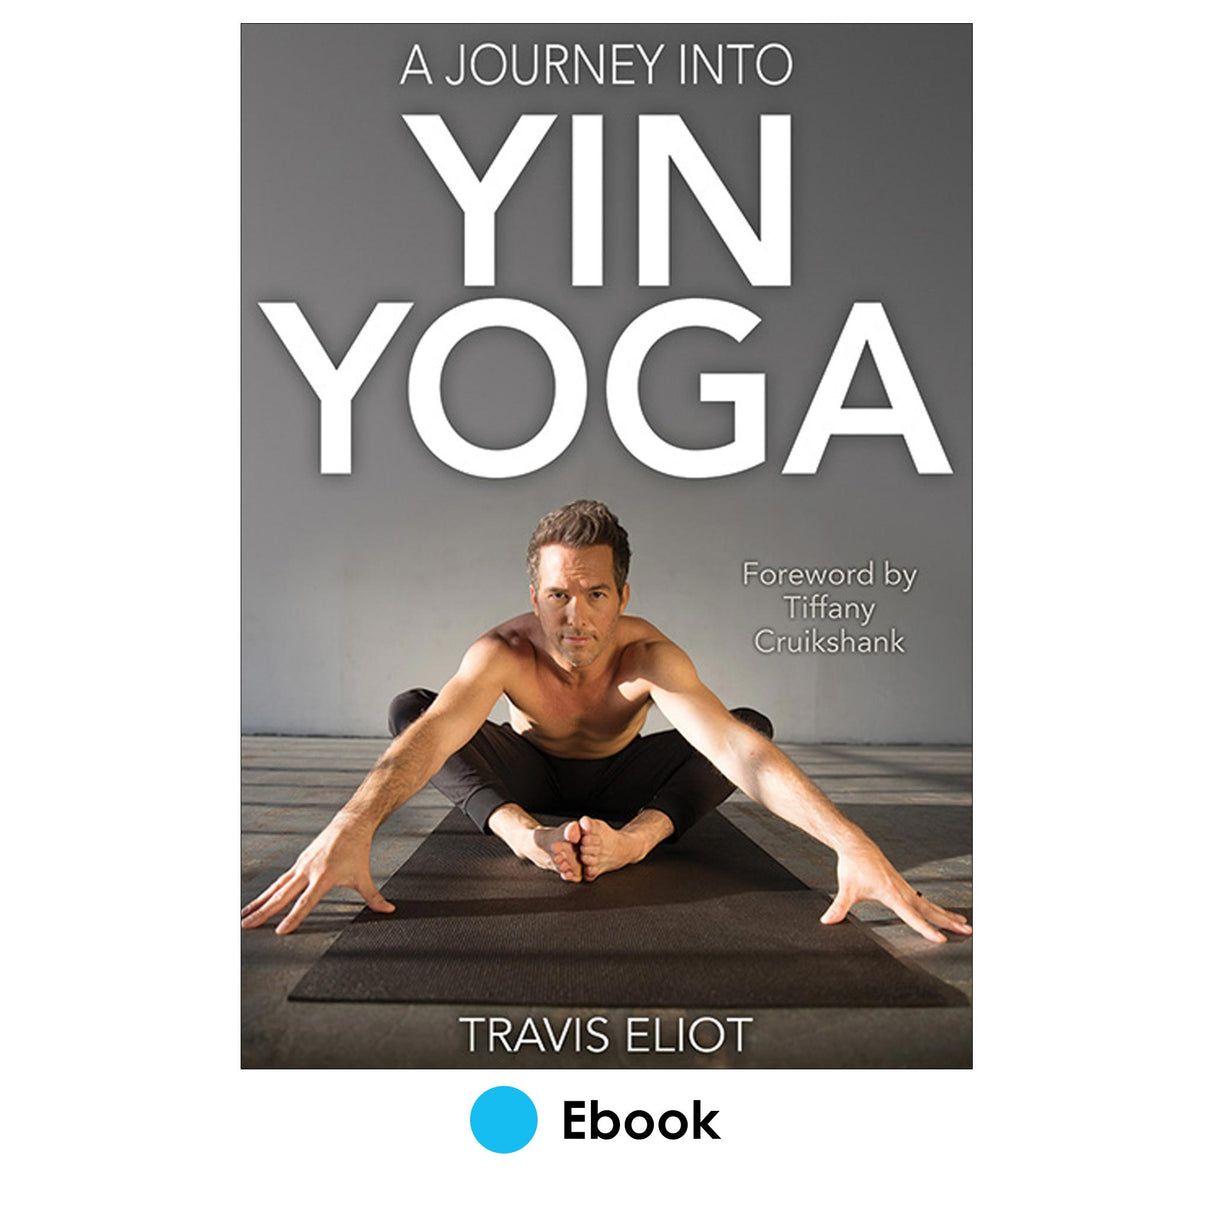 Journey Into Yin Yoga epub, A